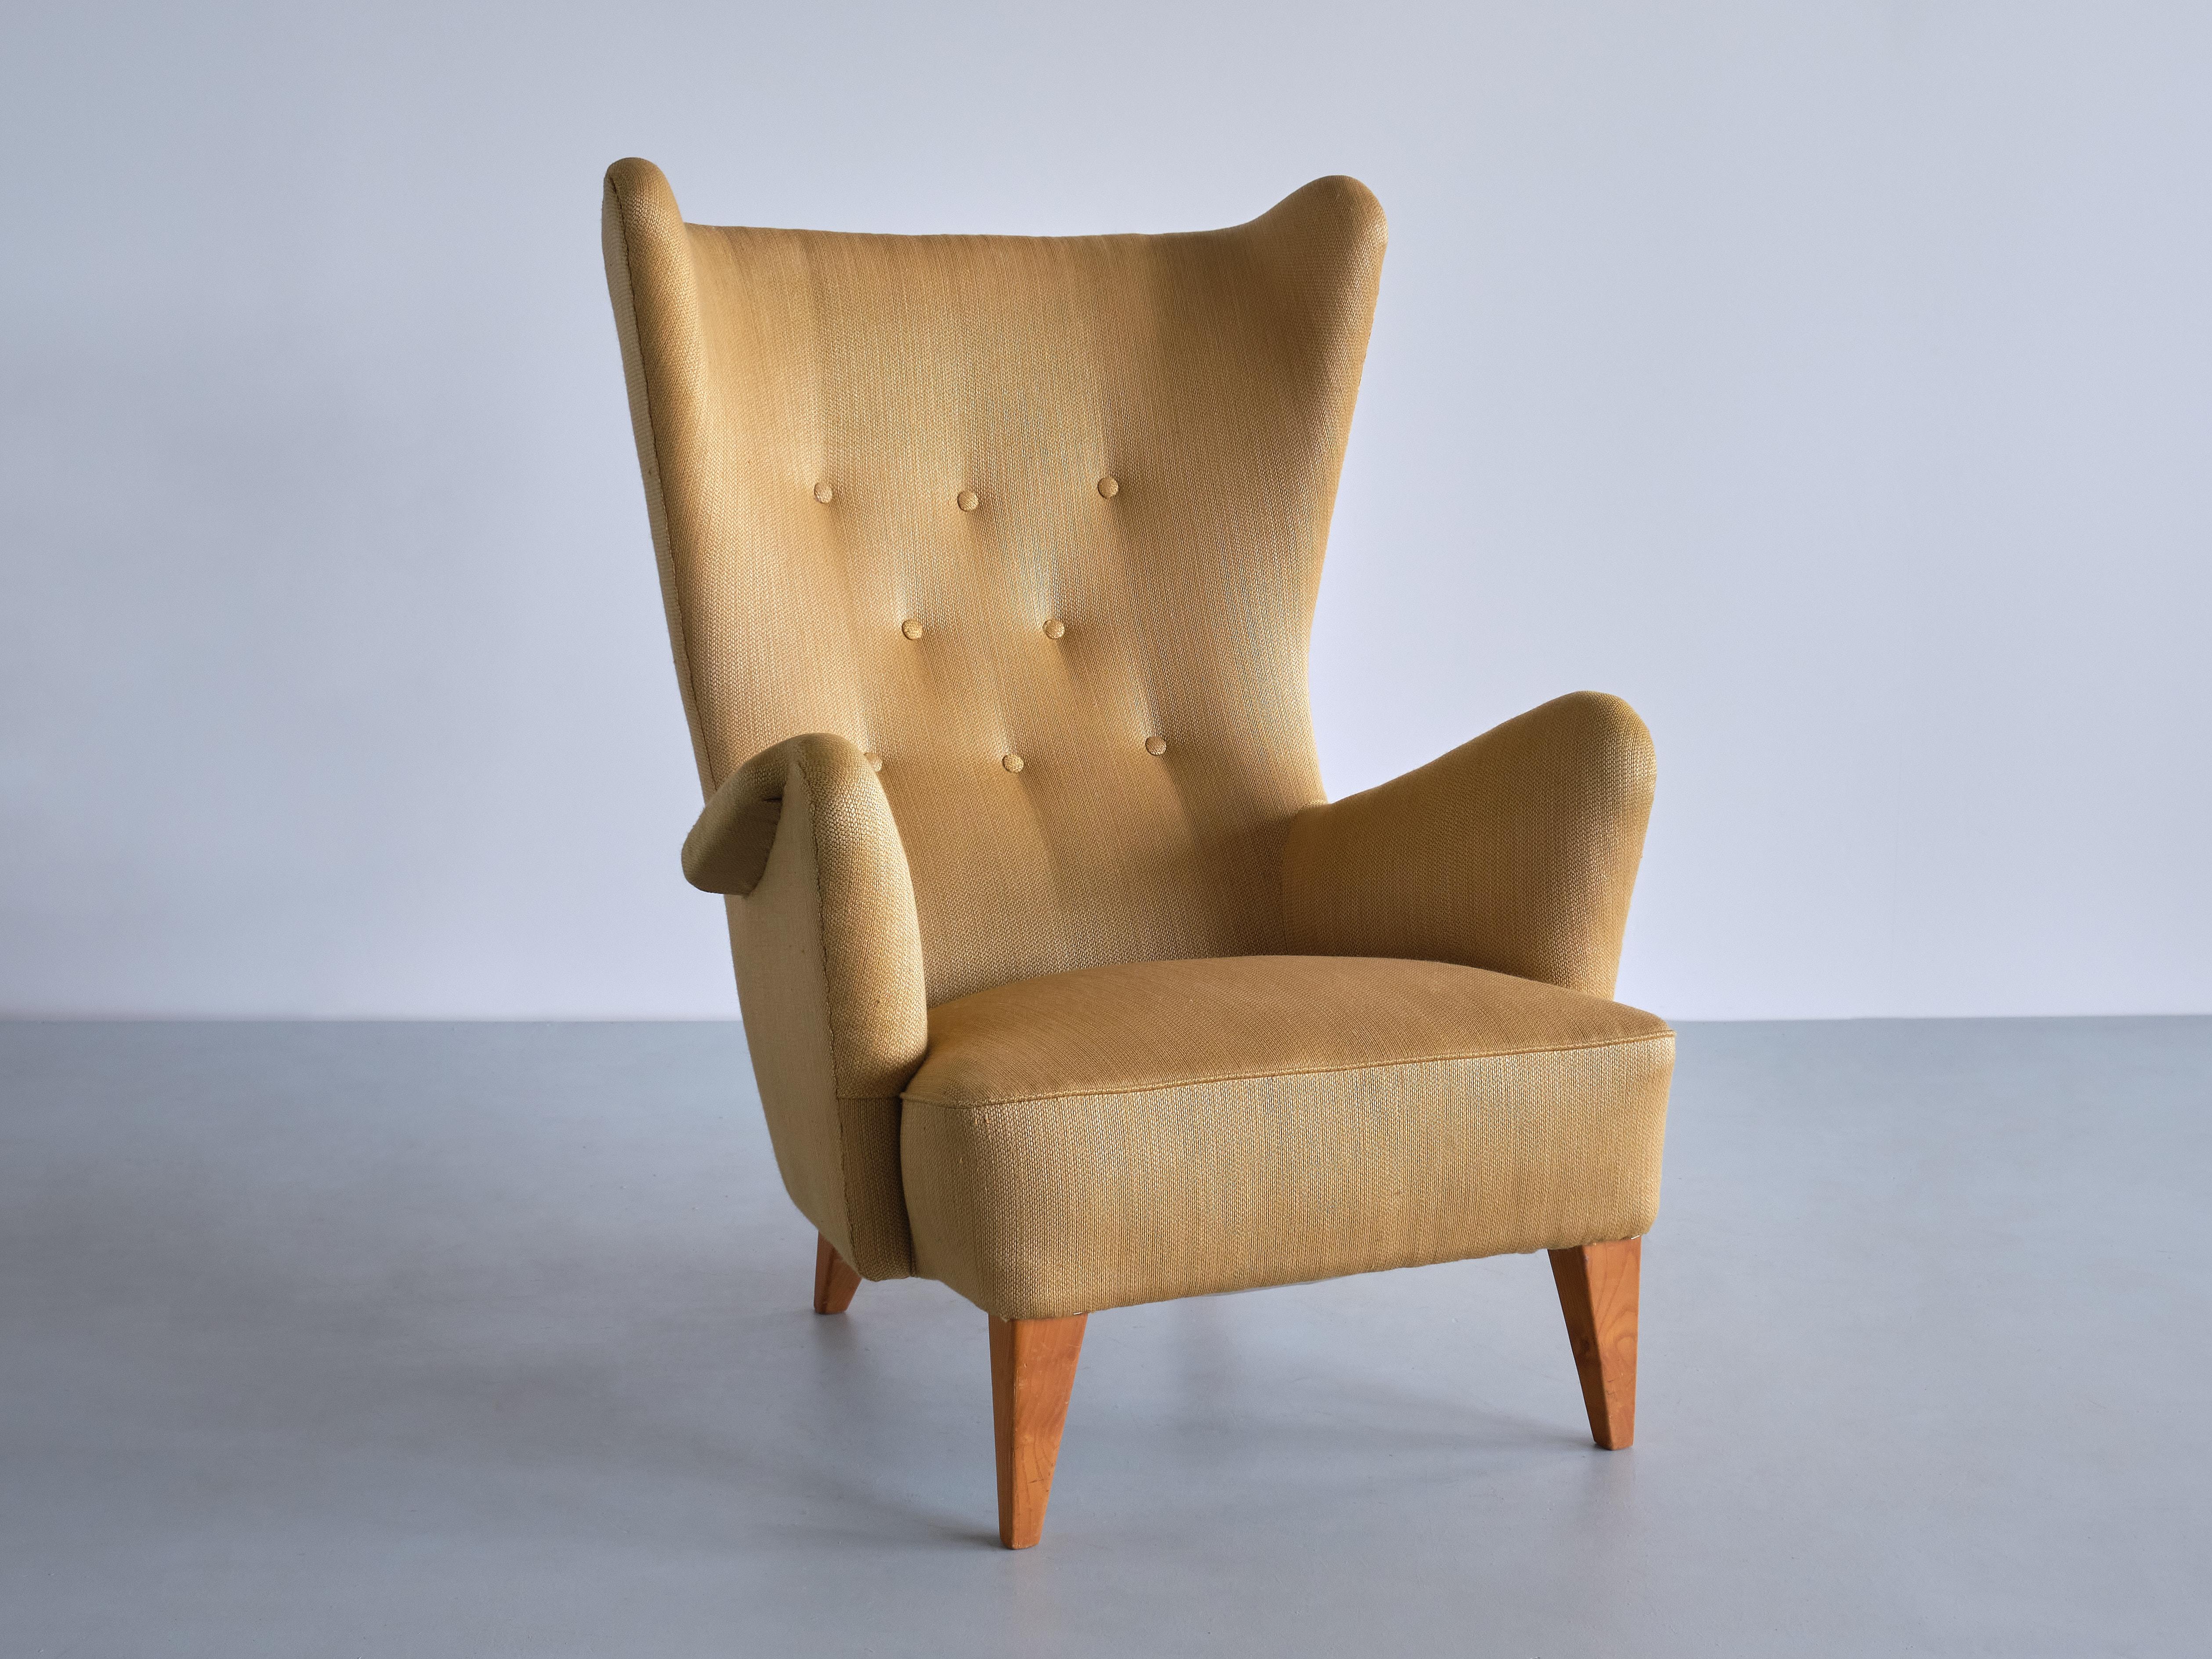 Cette rare chaise à dossier a été produite en Suède à la fin des années 1940. Le dessin est attribué à Gustaf Axel Berg. La chaise est présentée dans une publicité de 1950 du grand magasin haut de gamme Wessels à Malmö.

Les lignes organiques